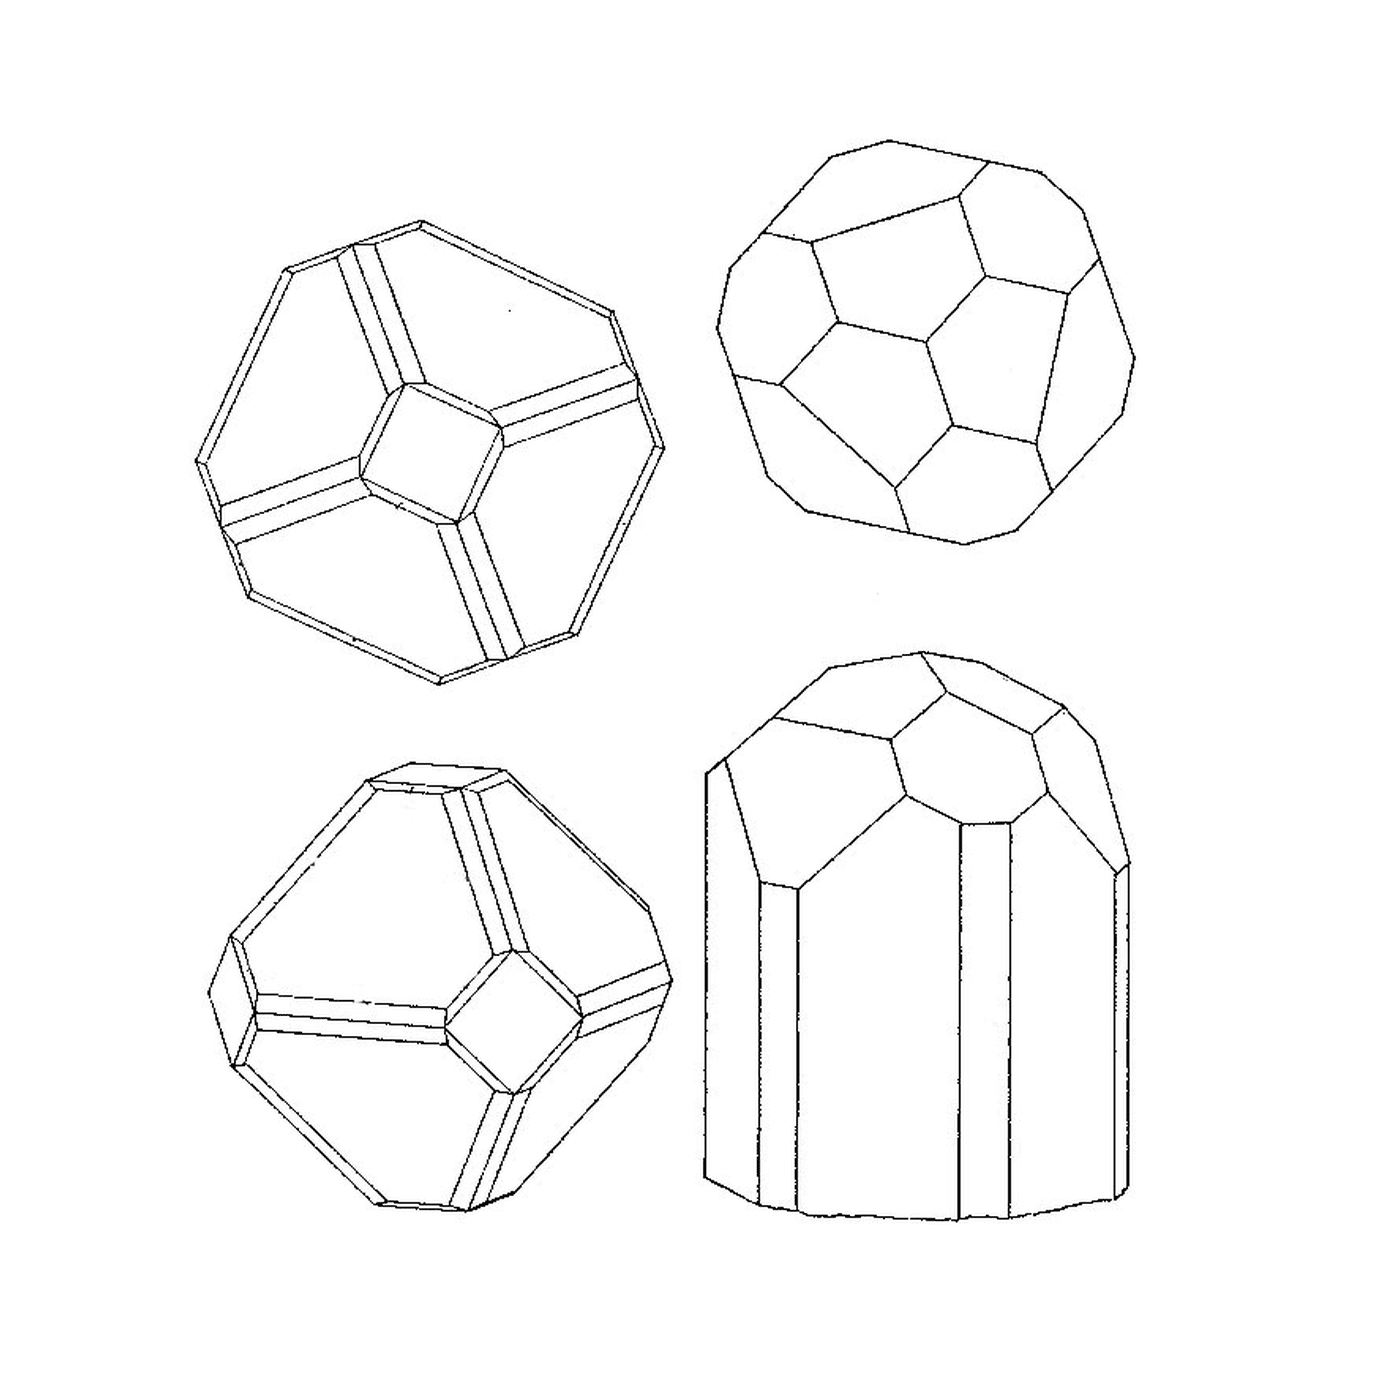  Cuatro formas geométricas diferentes 